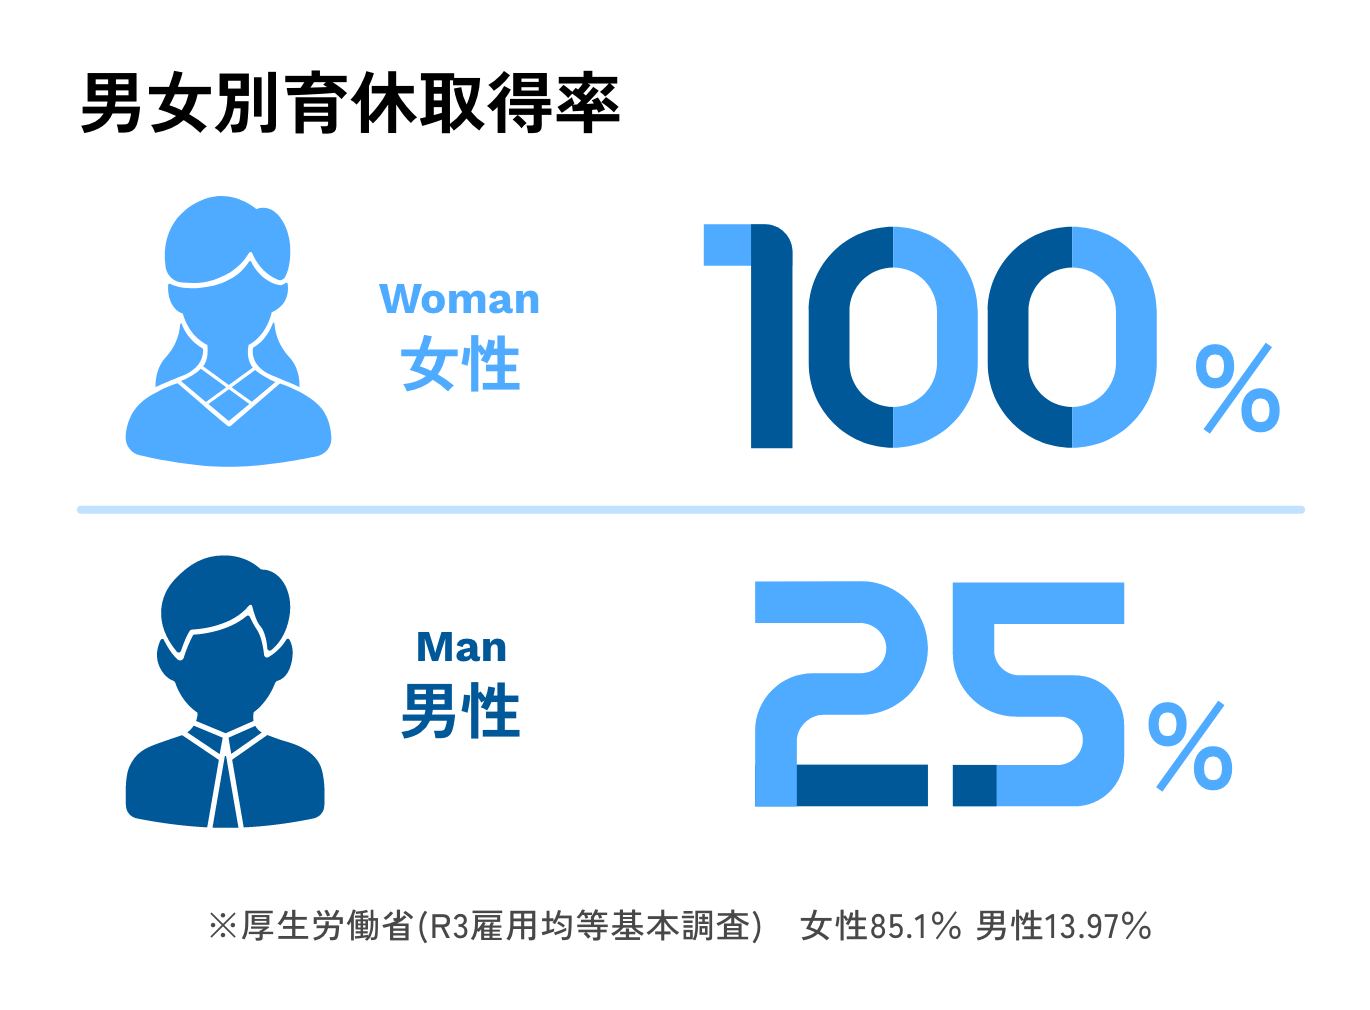 男女別育休取得率 女性100%、男性25%